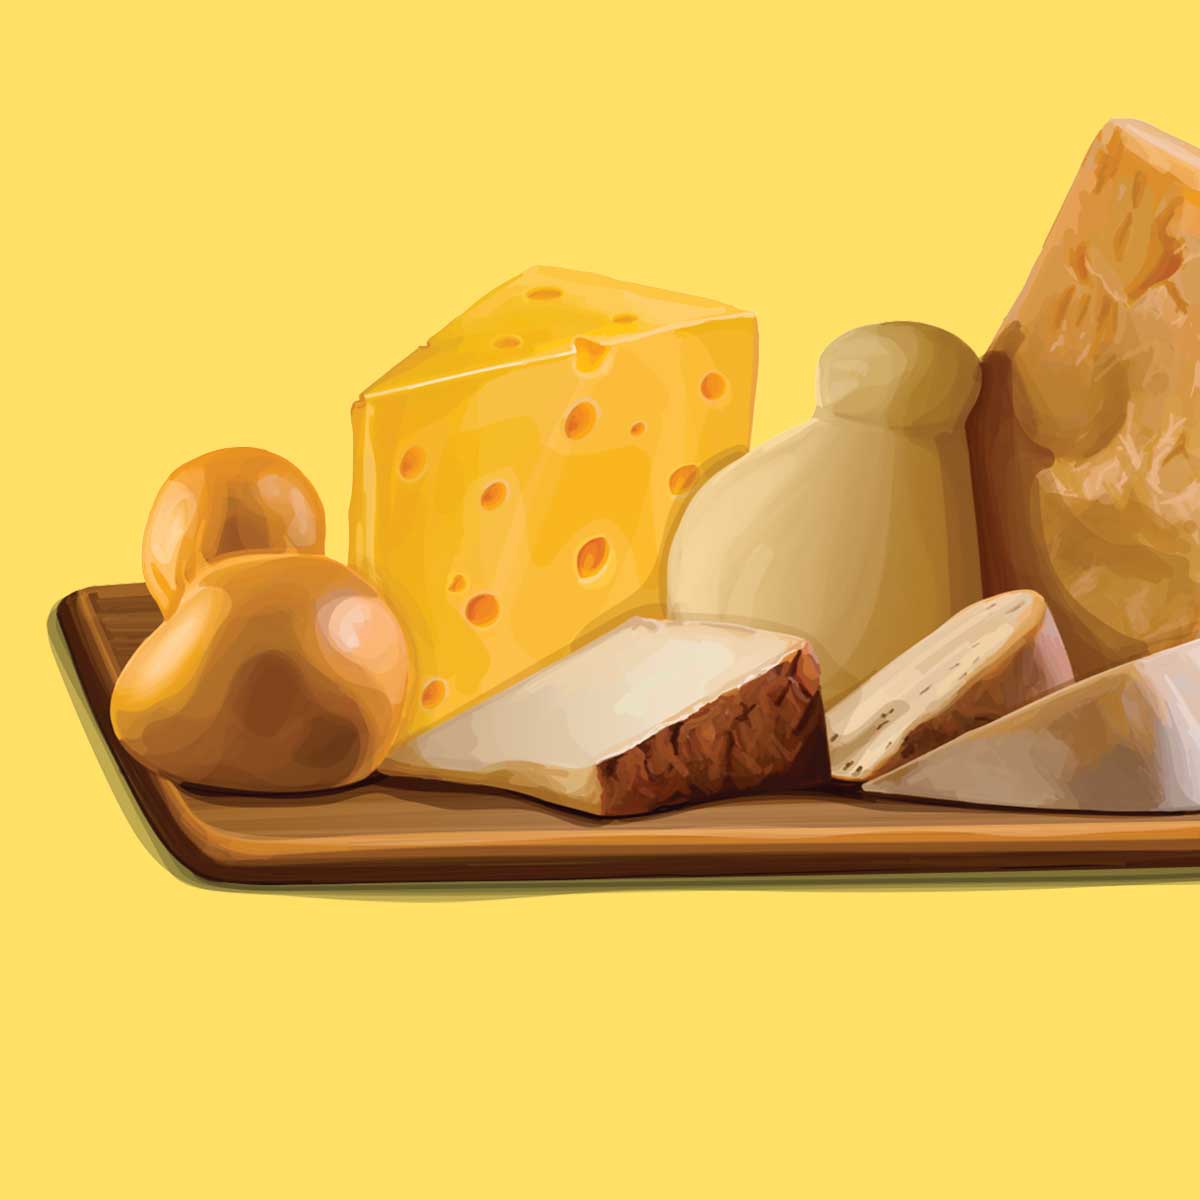 Fine Mesh Mat - Square Meter – Glengarry Cheesemaking